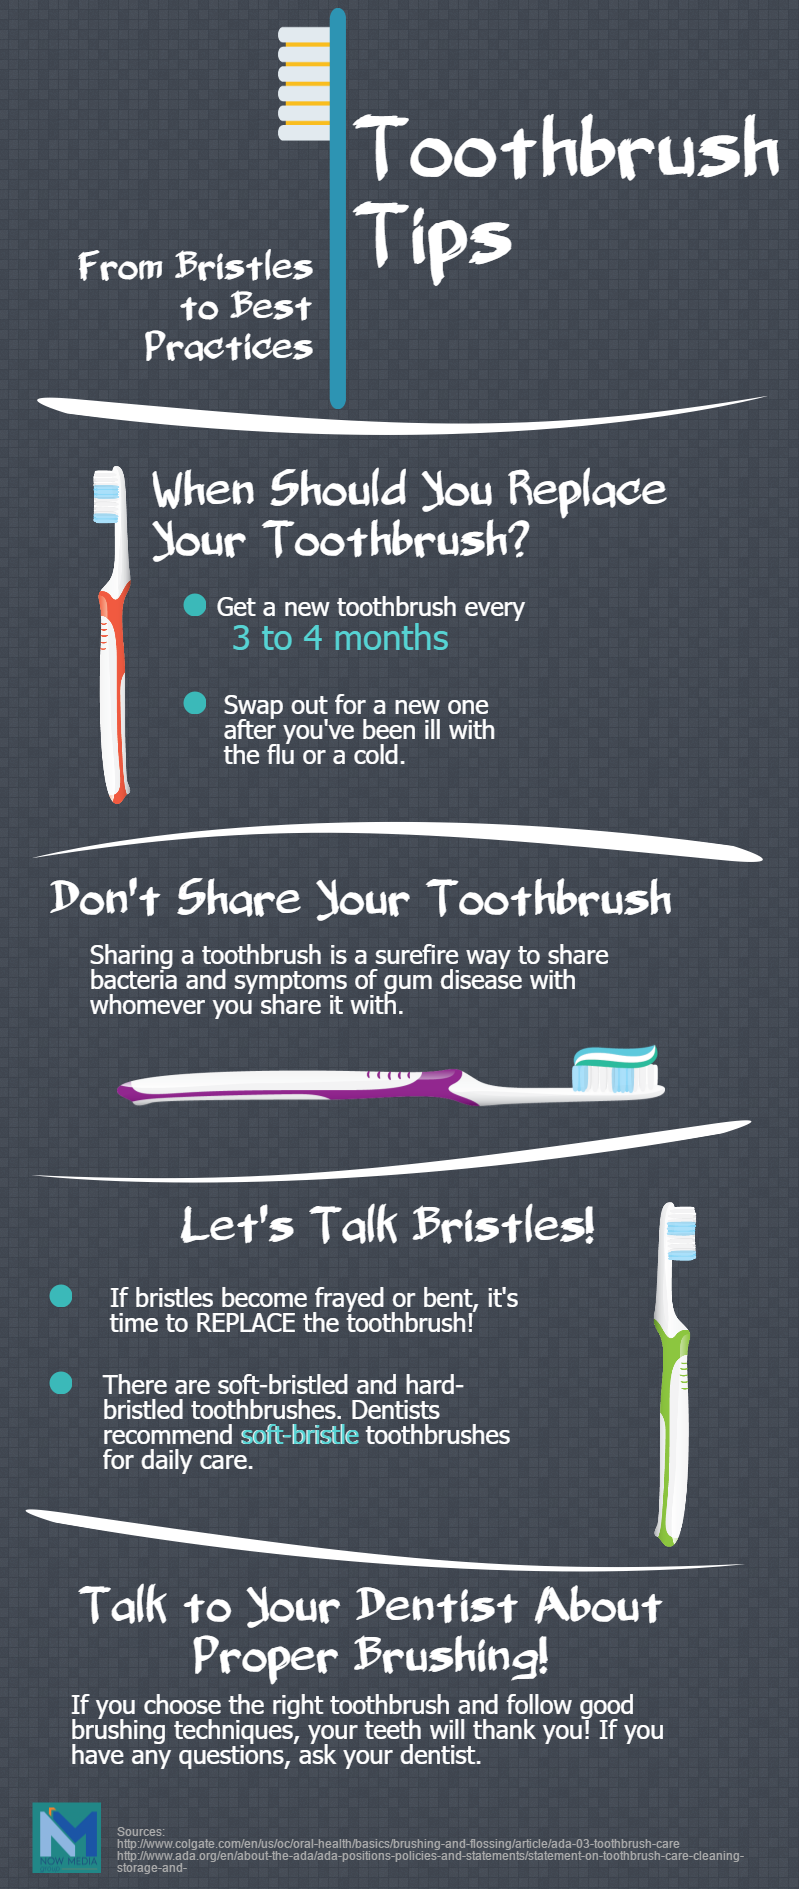 Toothbrush tips for better dental health